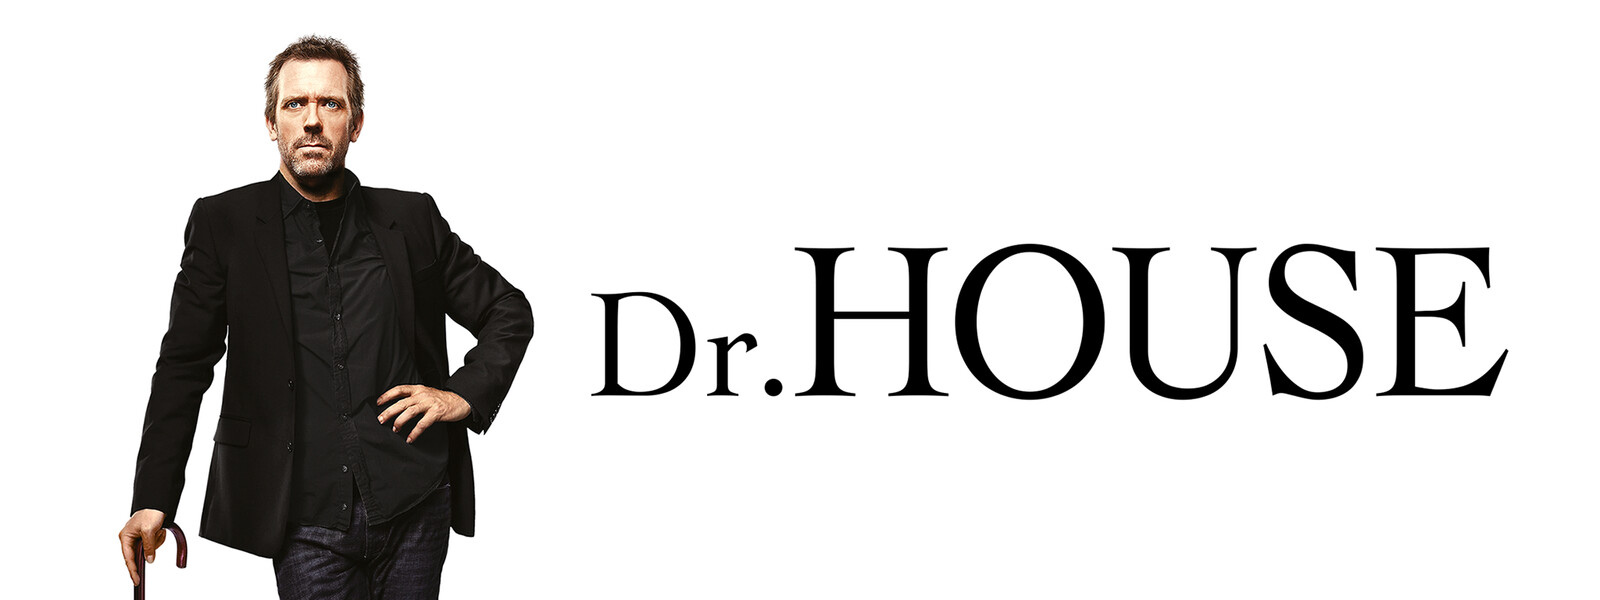 Dr. HOUSE／ドクター・ハウス シーズン5の動画 - Dr. HOUSE／ドクター・ハウス シーズン1